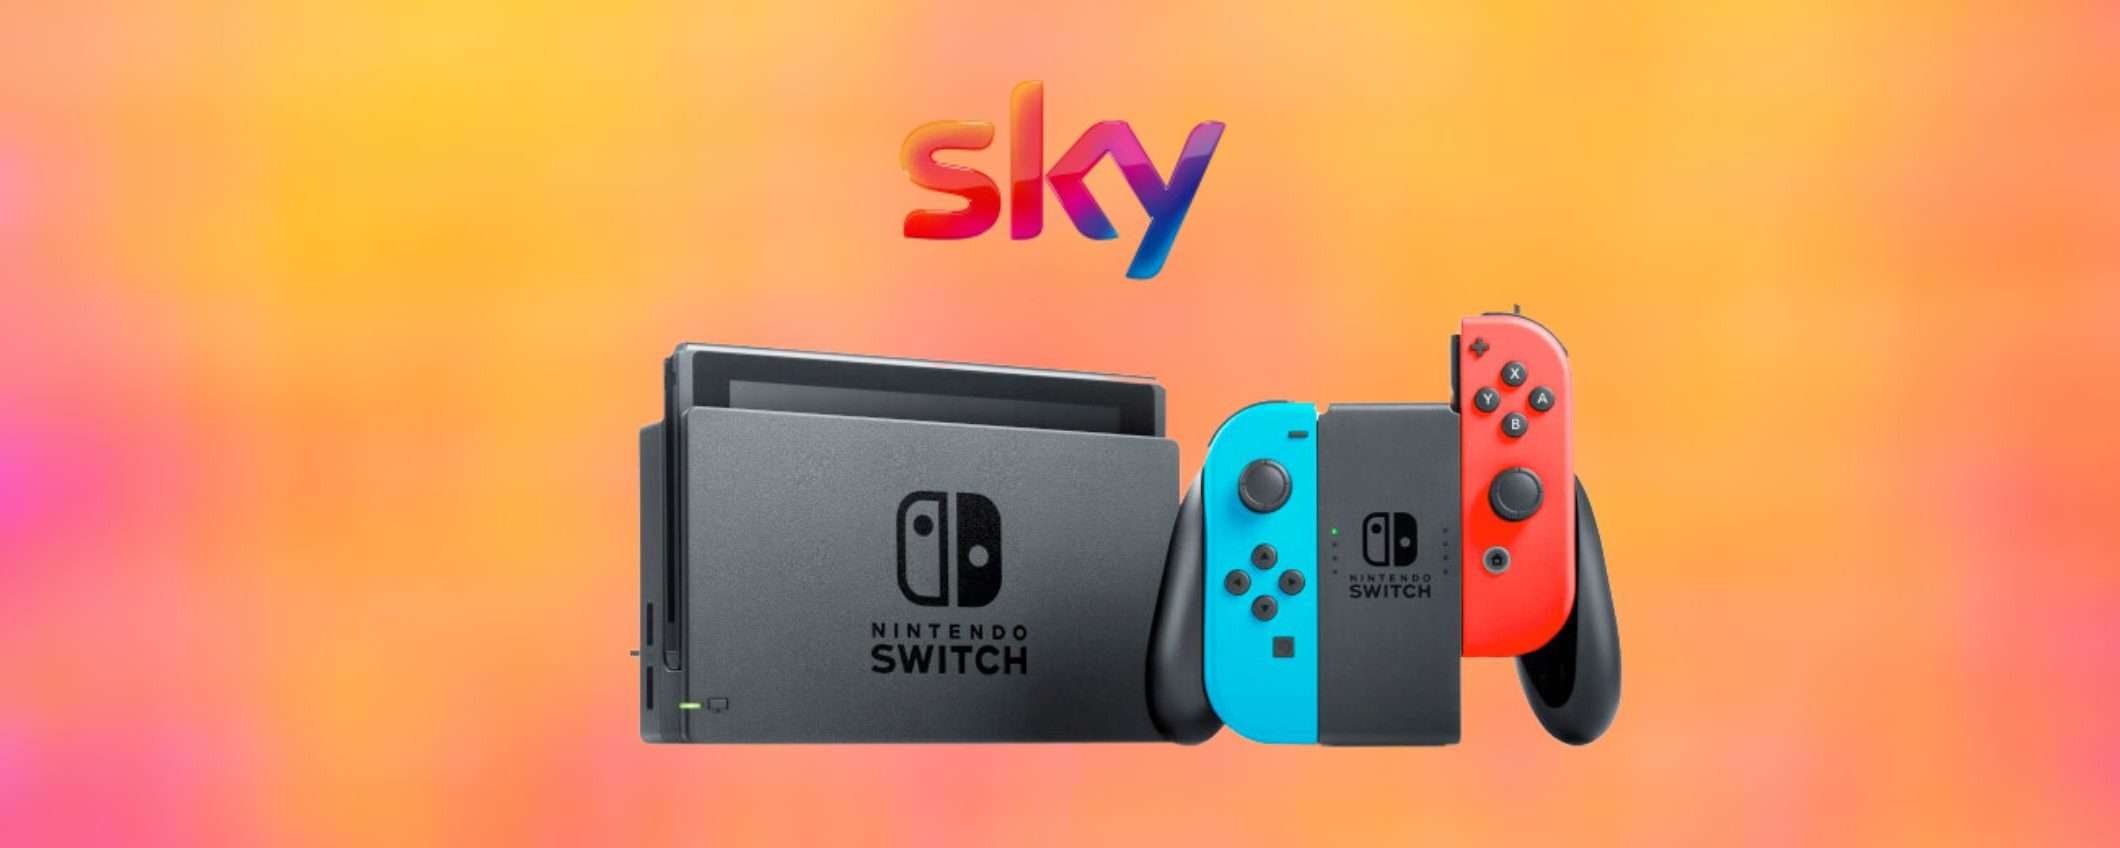 Sky ti regala la console Nintendo Switch: un'opportunità da non perdere